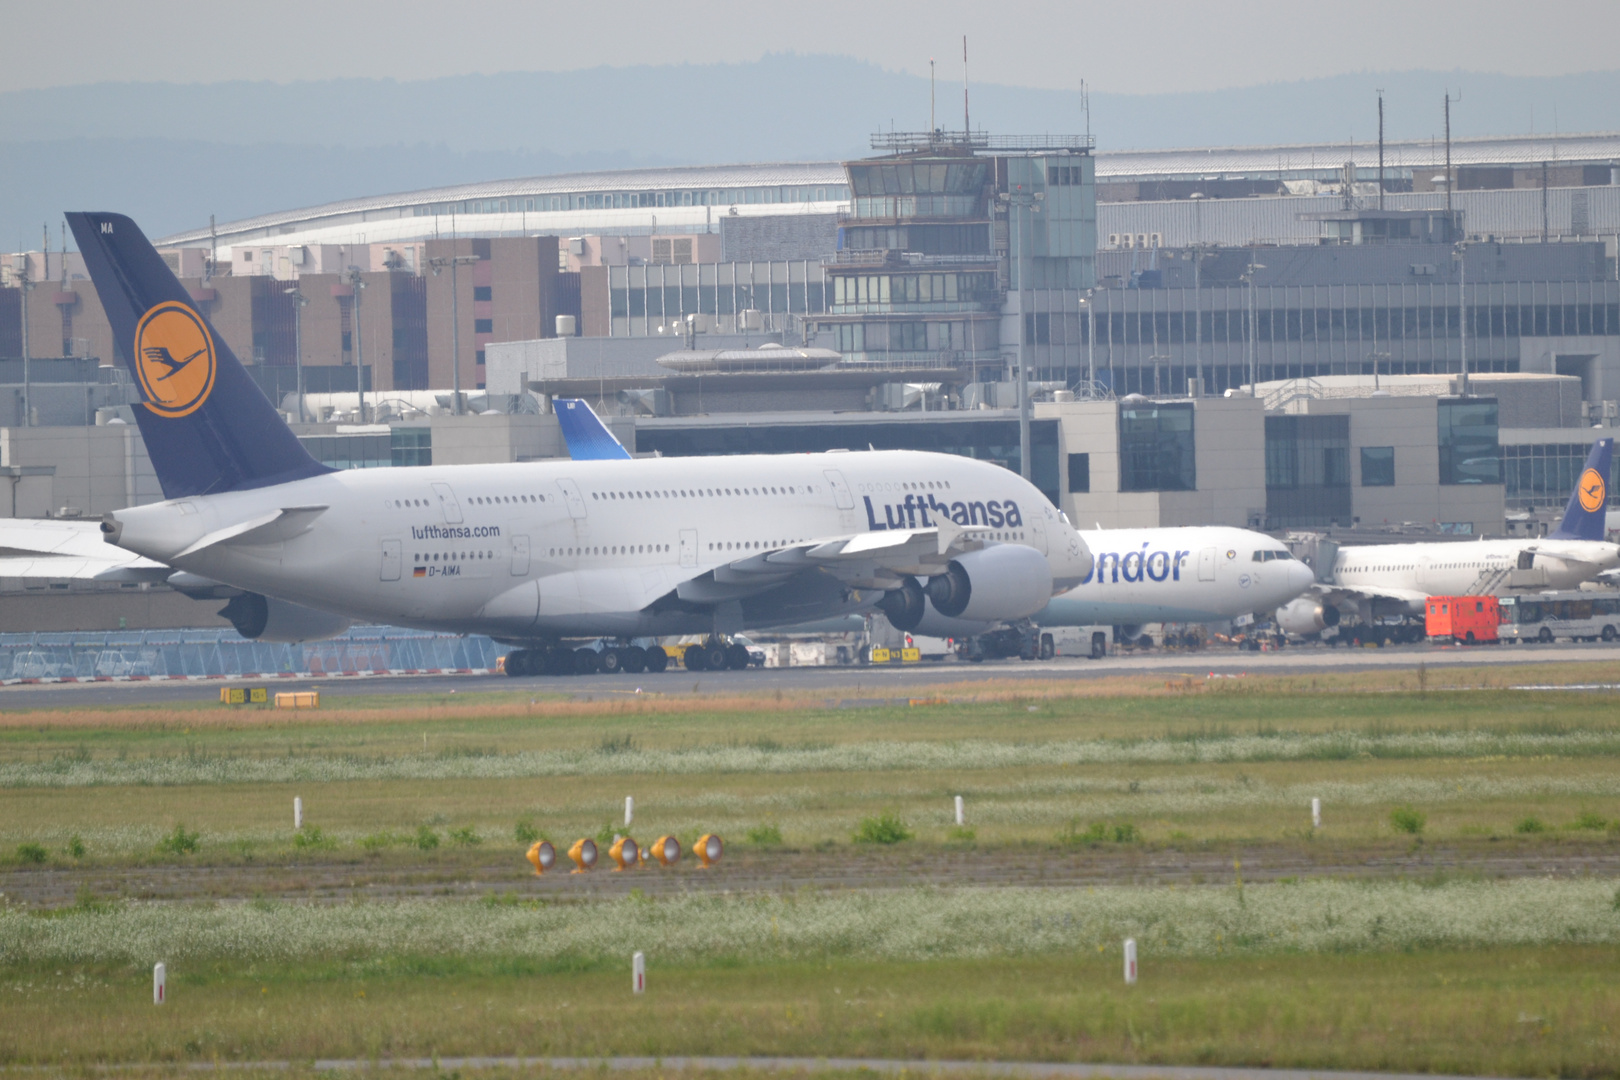 Ein Airbus A380 der Lufthansa - leider in Parkposition und sehr weit entfernt